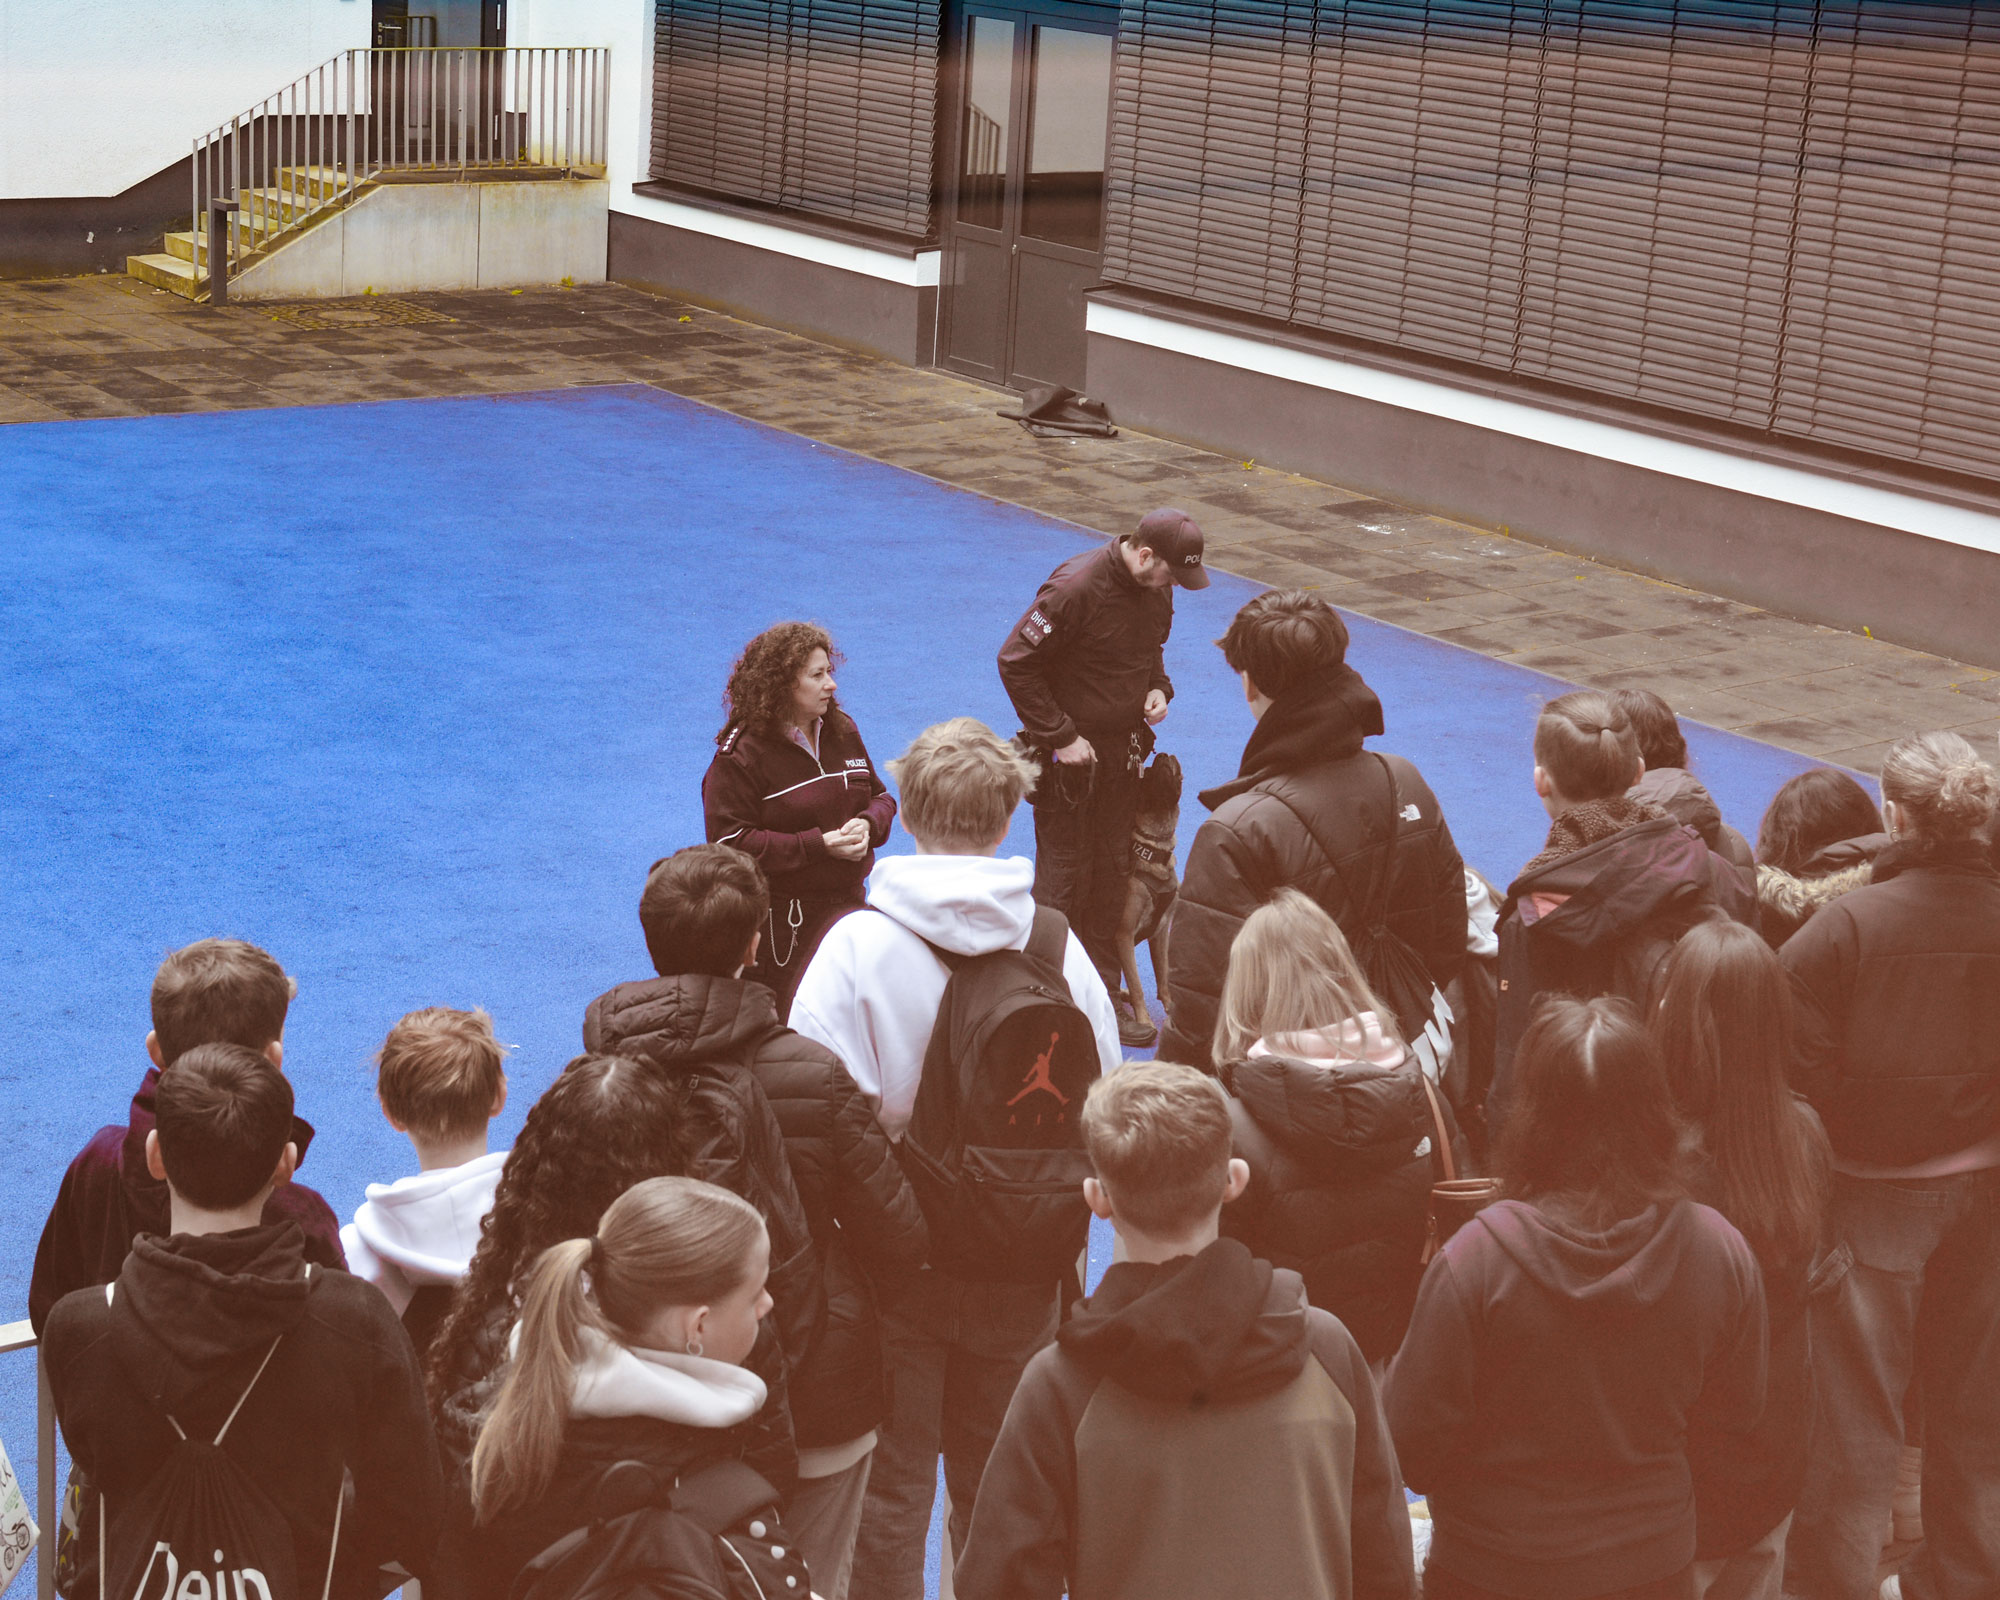 Schülerinnen und Schüler hören dem Vortrag der Diensthundestaffel zu und sehen einen trainierenden Diensthund